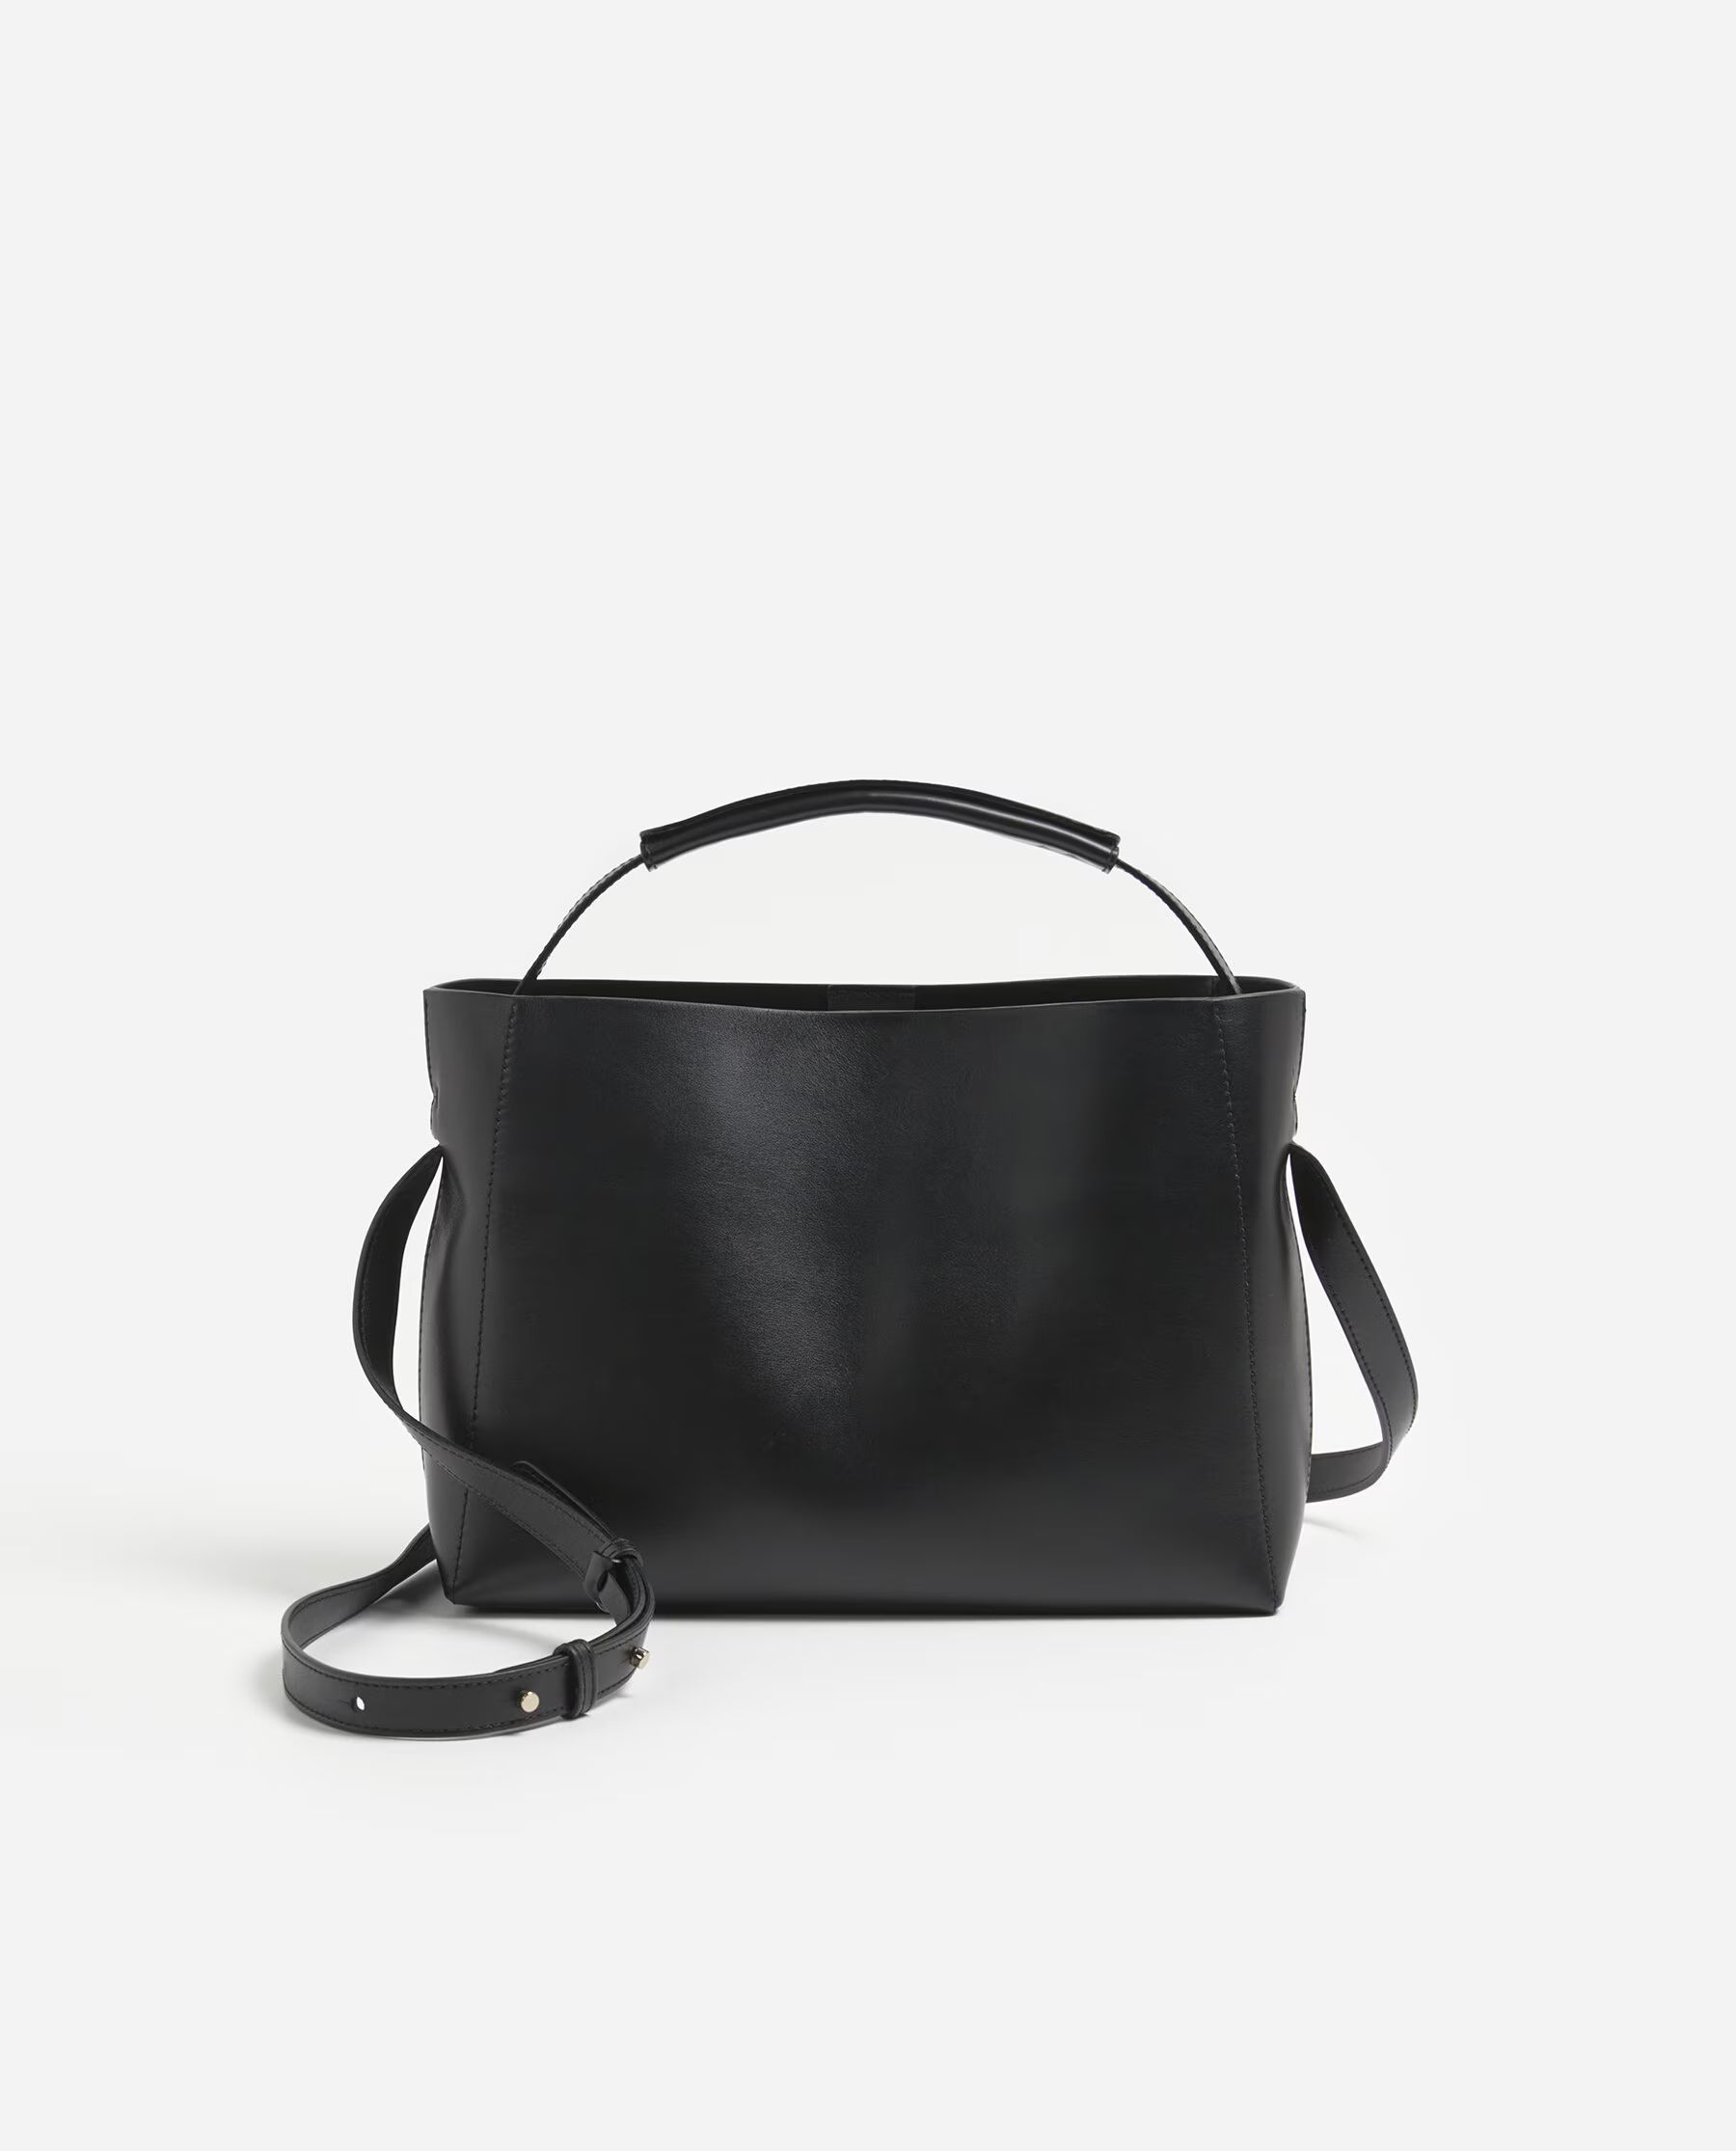 Hedda Handbag Leather Black | Flattered